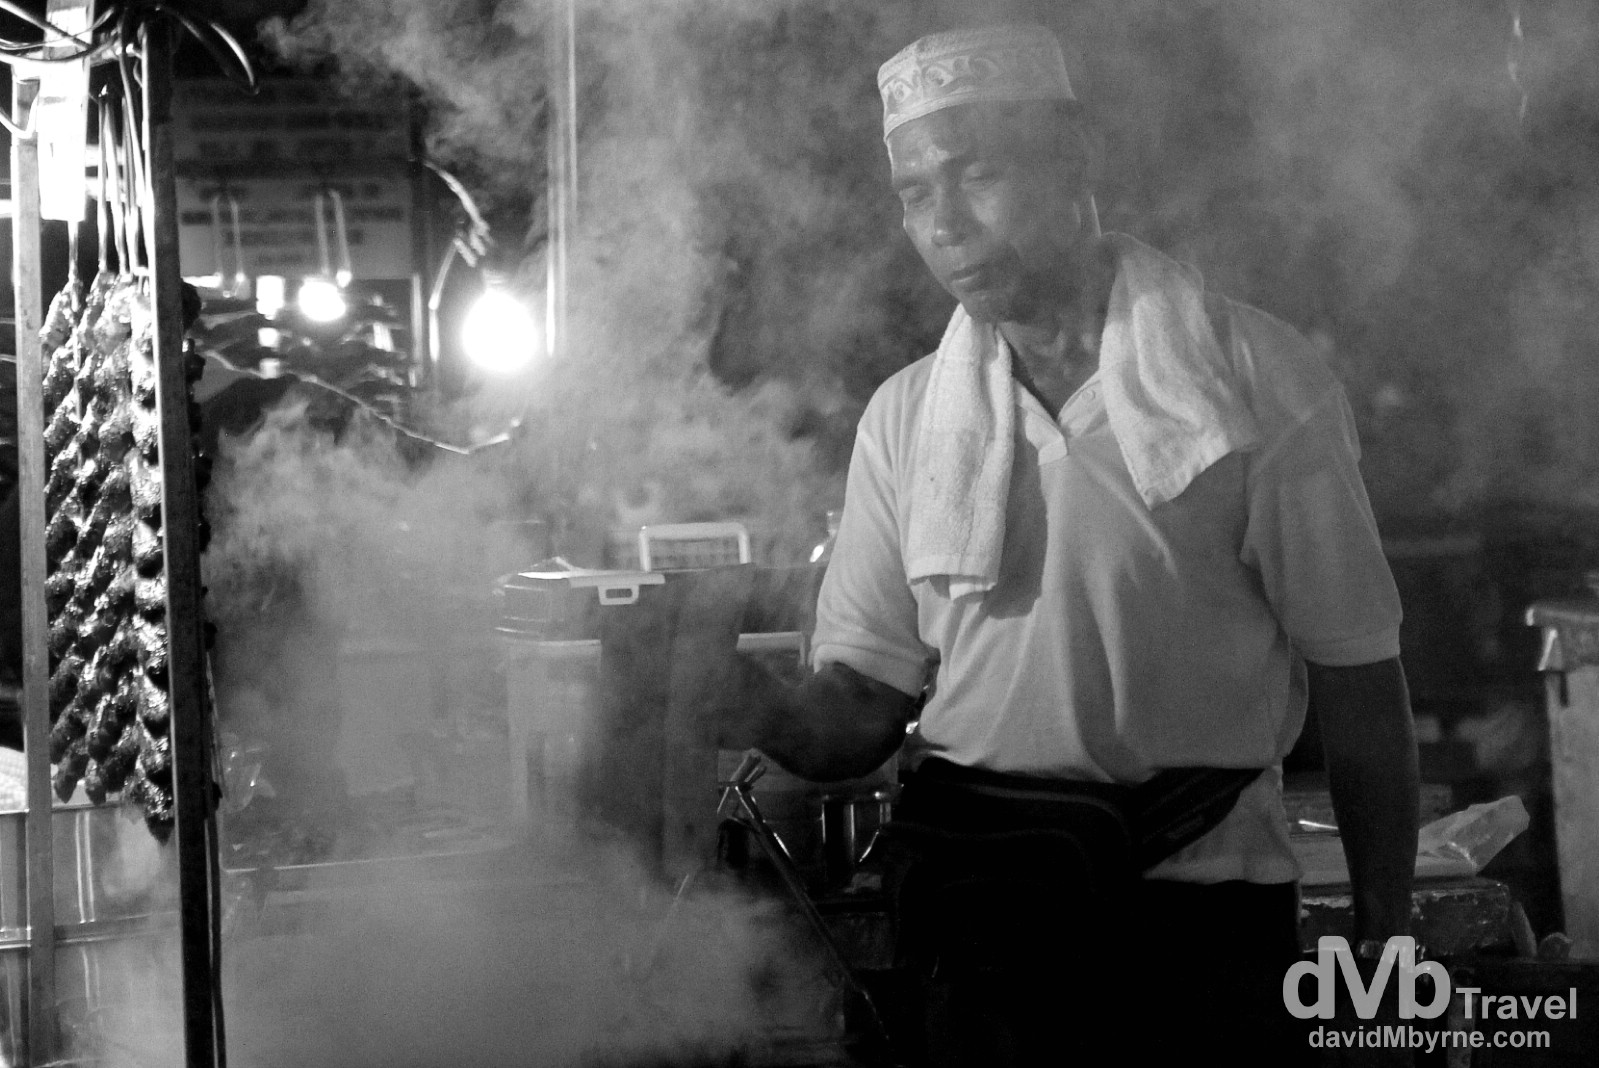 Food Market, Kota Kinabalu, Sabah, Malaysian Borneo. June 21st 2012.